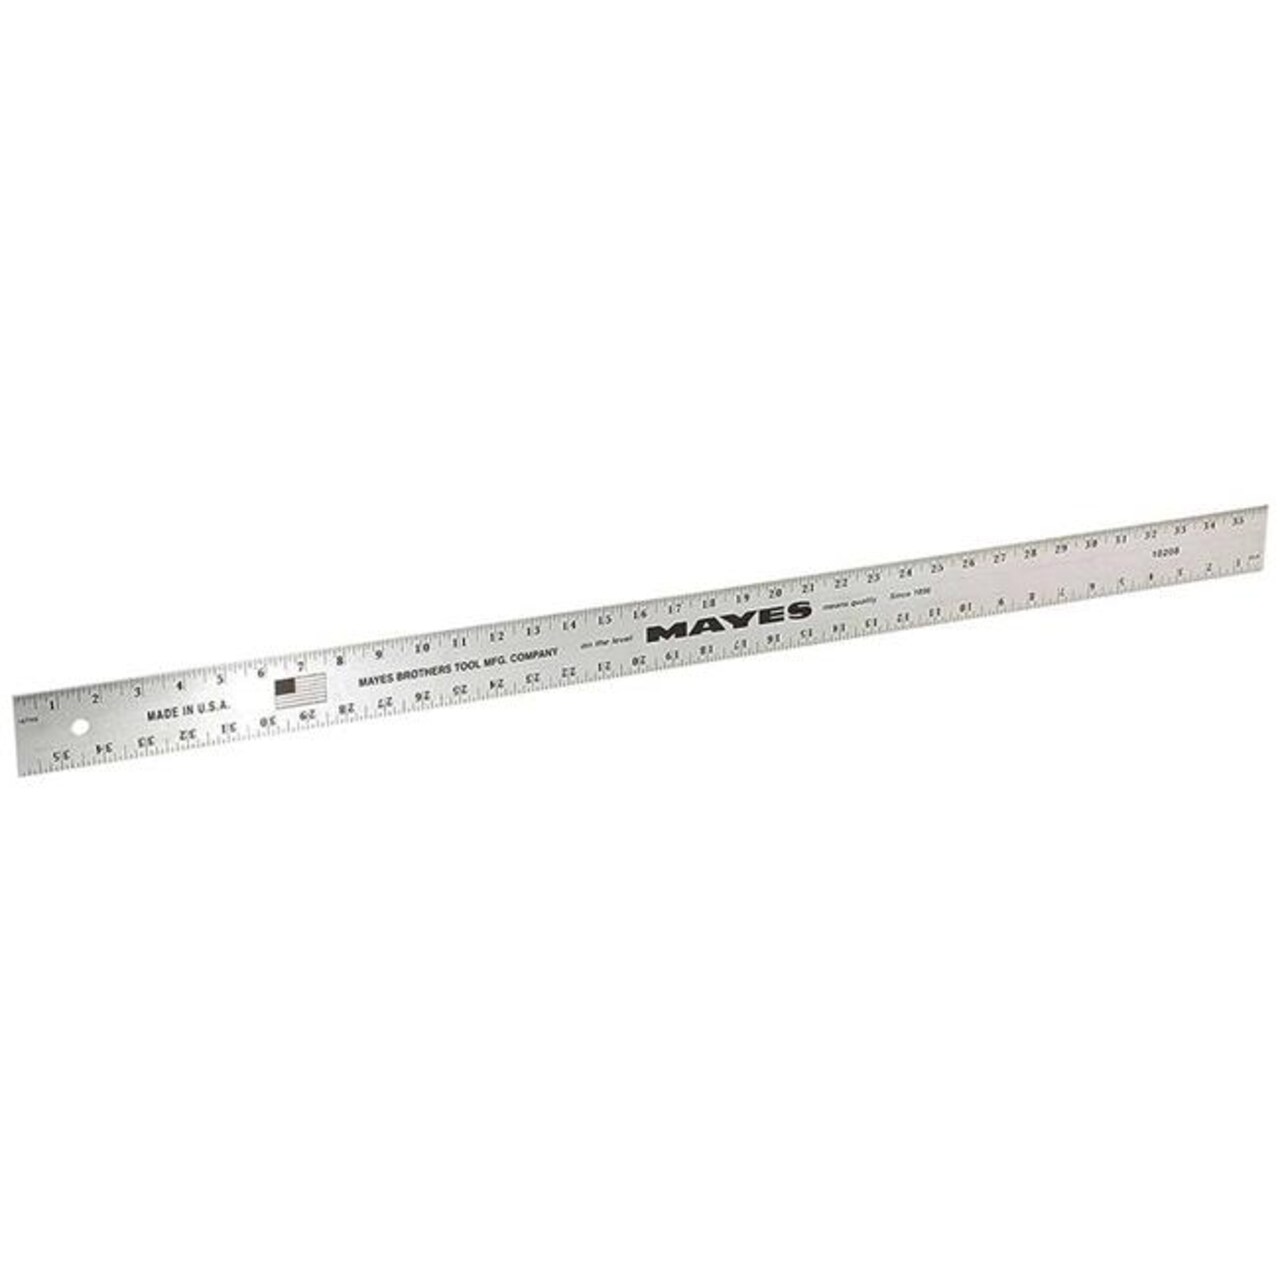 36 in. Aluminum Straight Edge Ruler